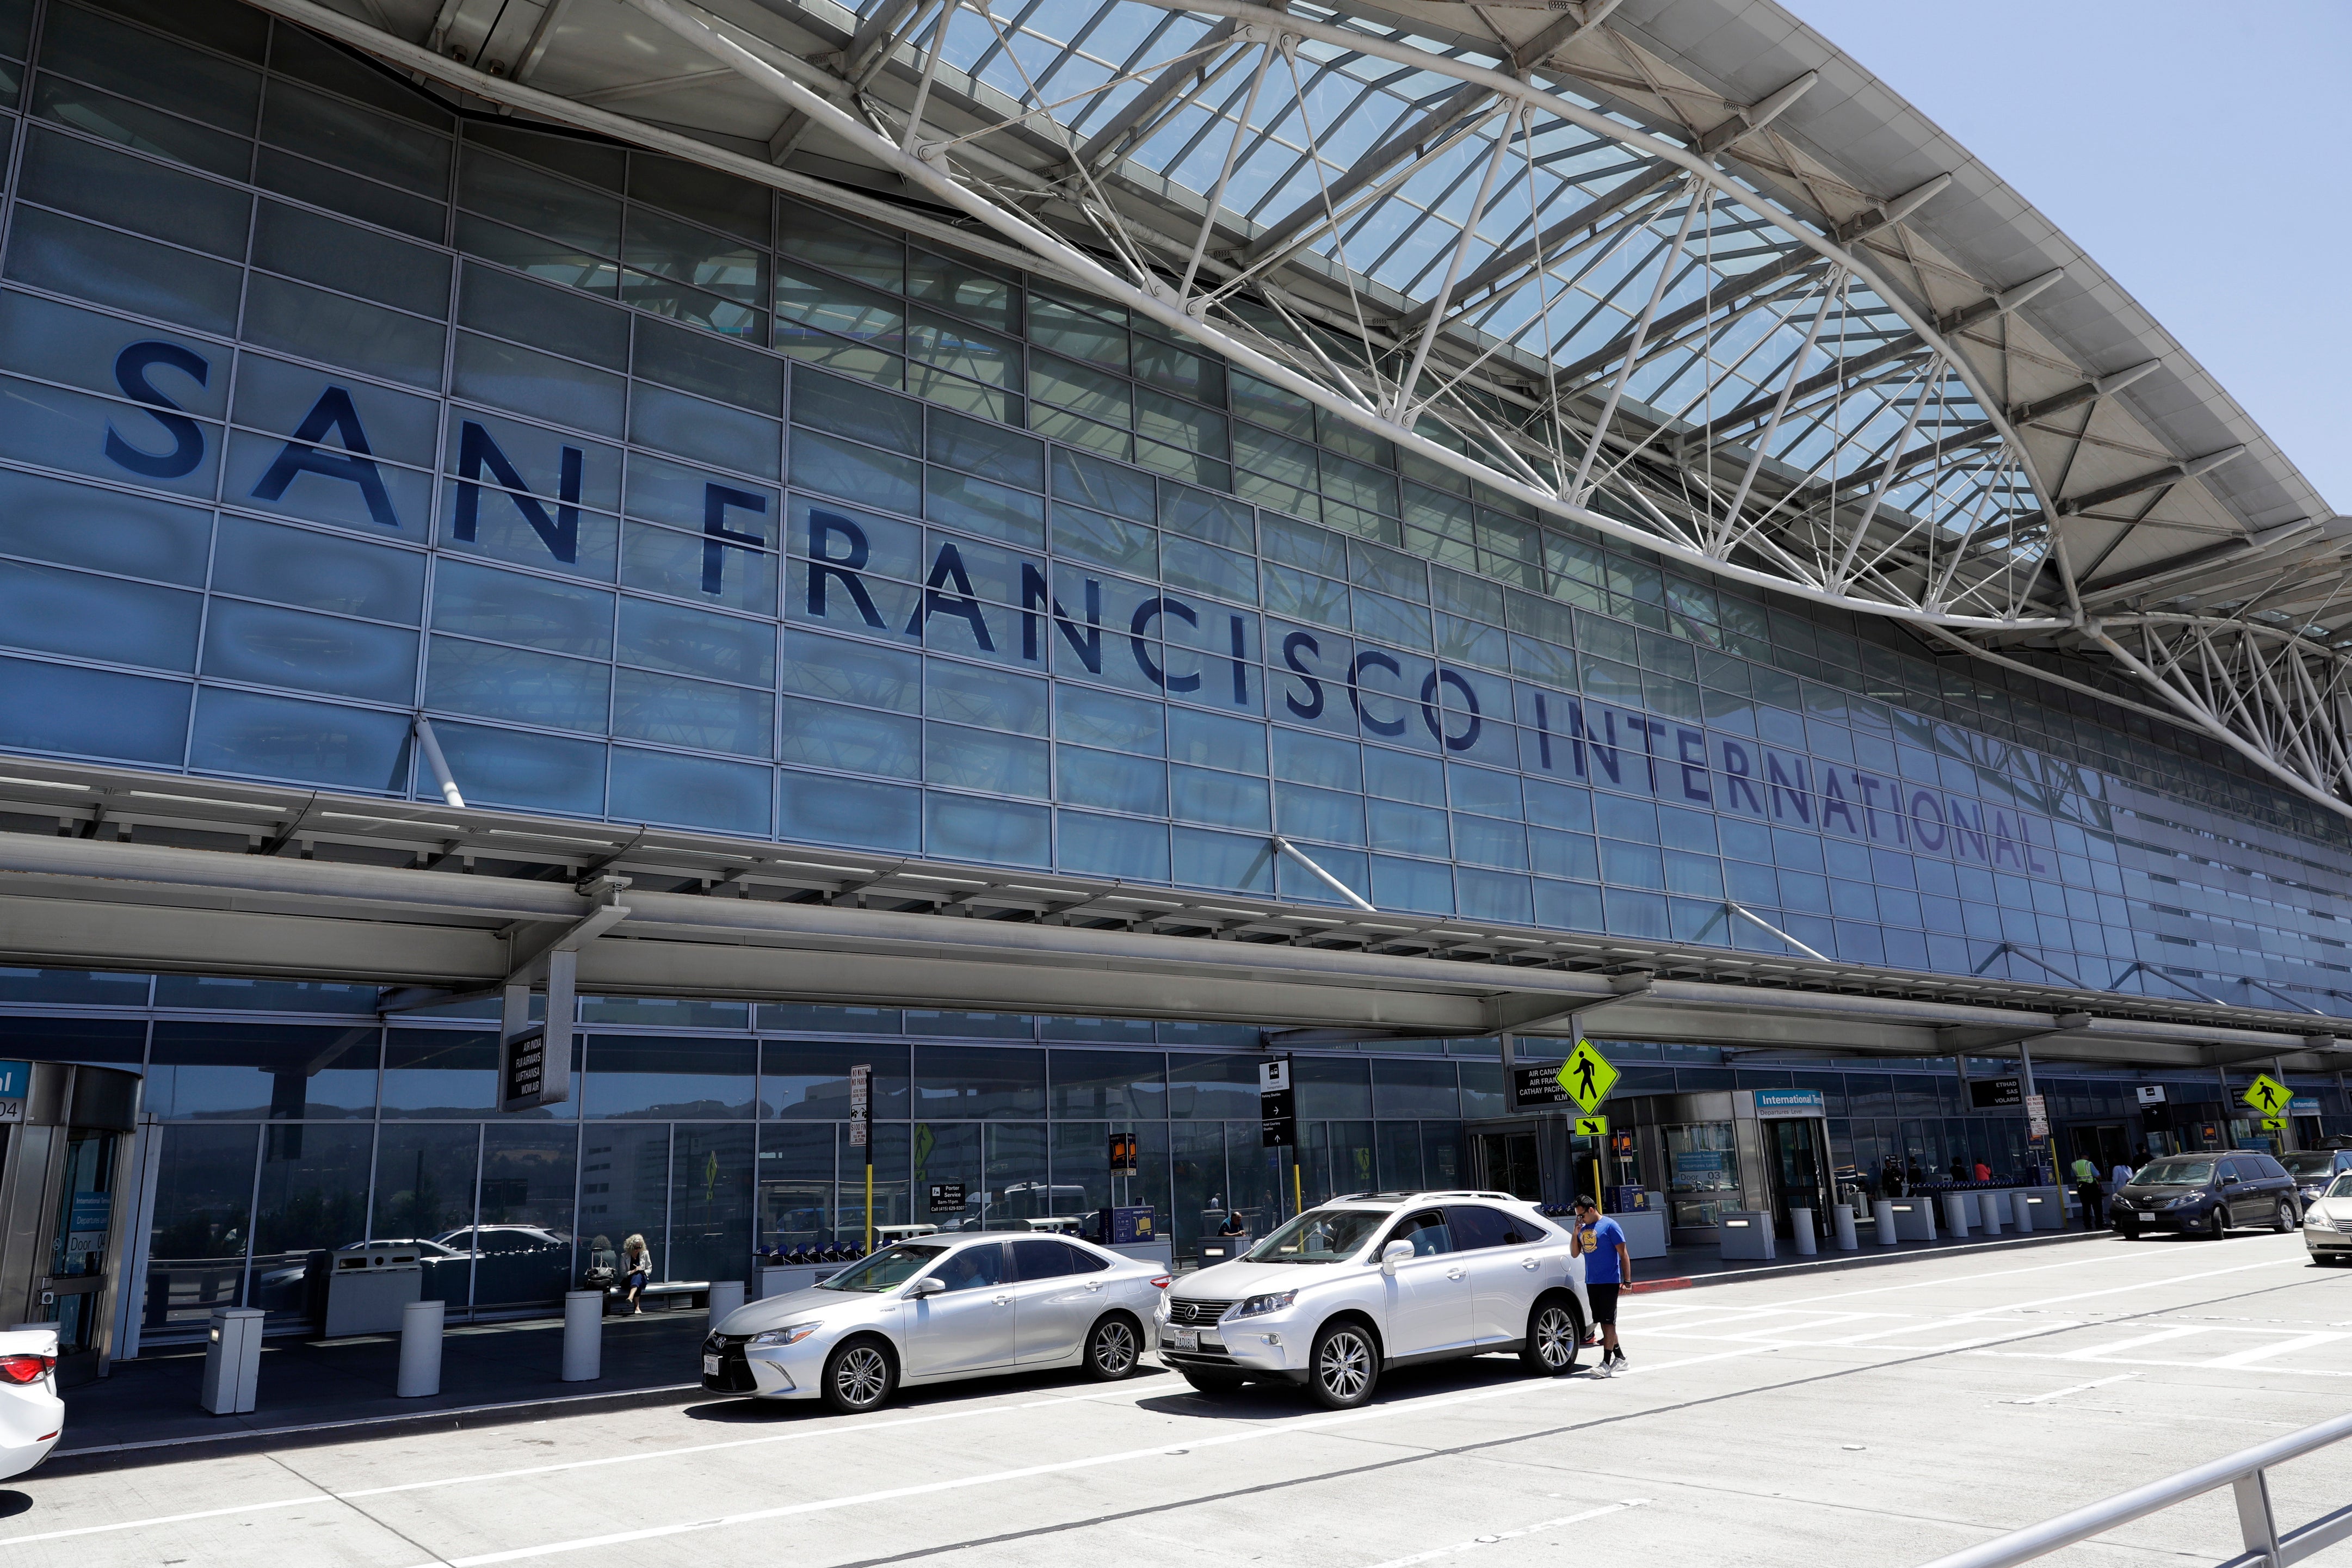 San Francisco Airport Stabbing